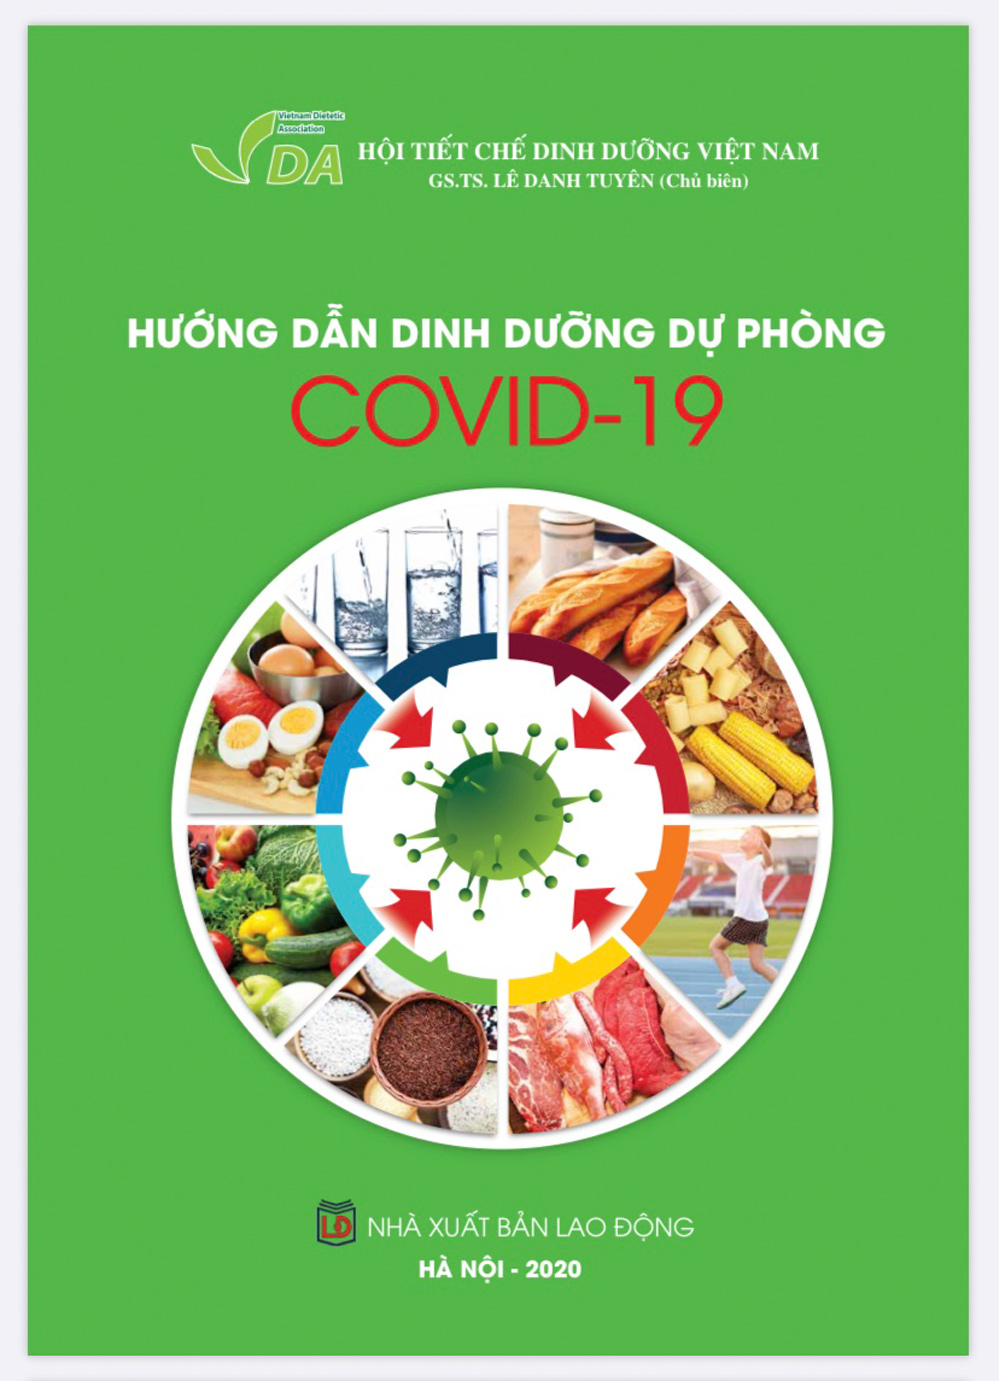 Cuốn sách hướng dẫn dinh dưỡng hữu ích trong mùa dịch Covid-19.